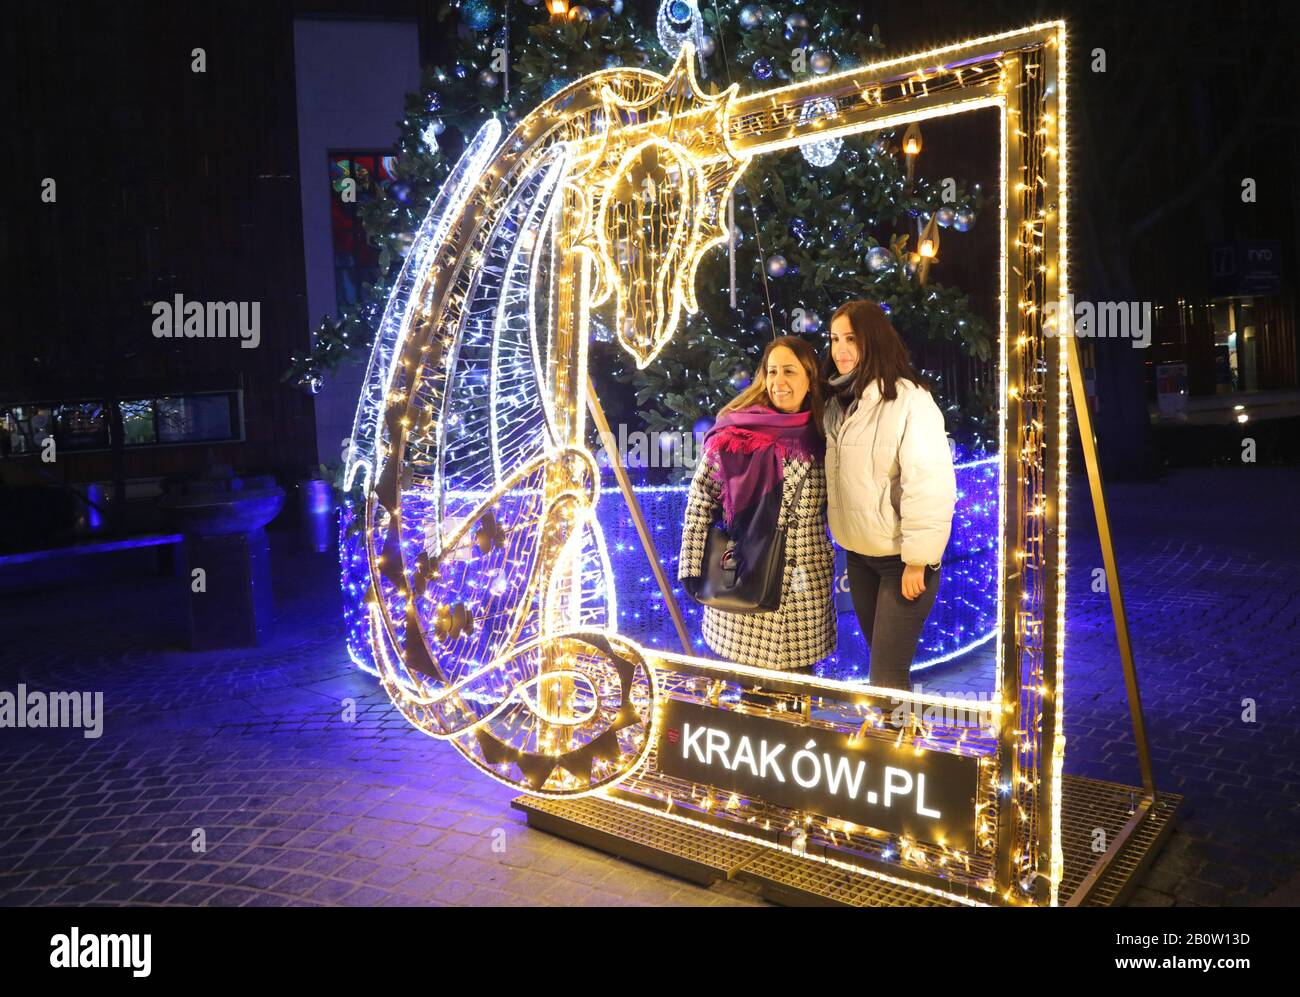 Krakauer. Krakow. Polen. Zwei Touristen posieren für den Schnappschuss im LED-Rahmen und sagen "krakow.pl". Stockfoto